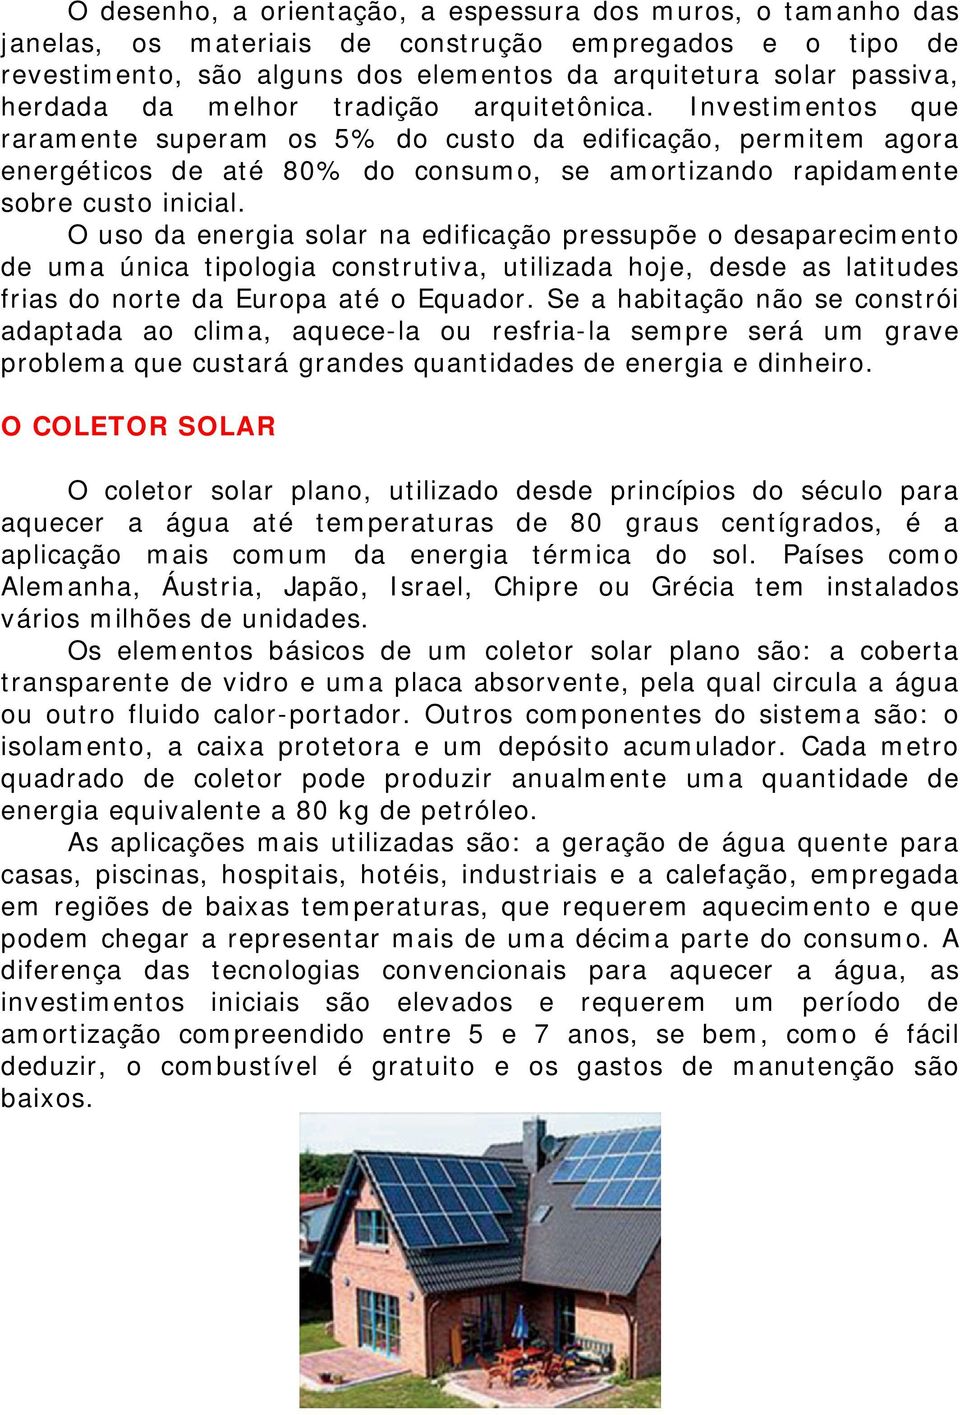 O uso da energia solar na edificação pressupõe o desaparecimento de uma única tipologia construtiva, utilizada hoje, desde as latitudes frias do norte da Europa até o Equador.